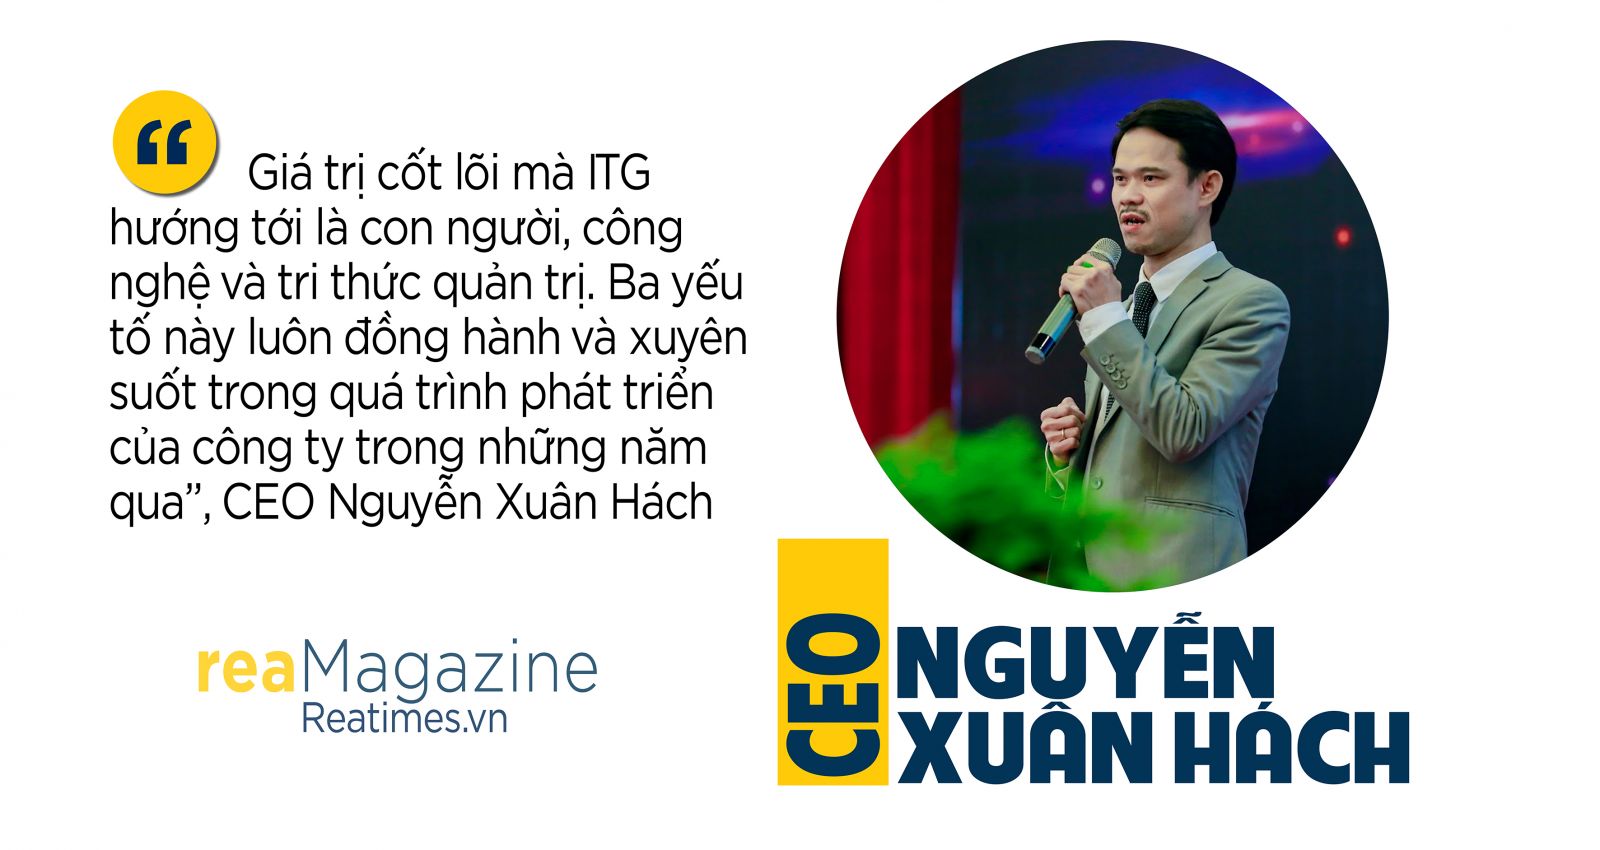 CEO Nguyễn Xuân Hách